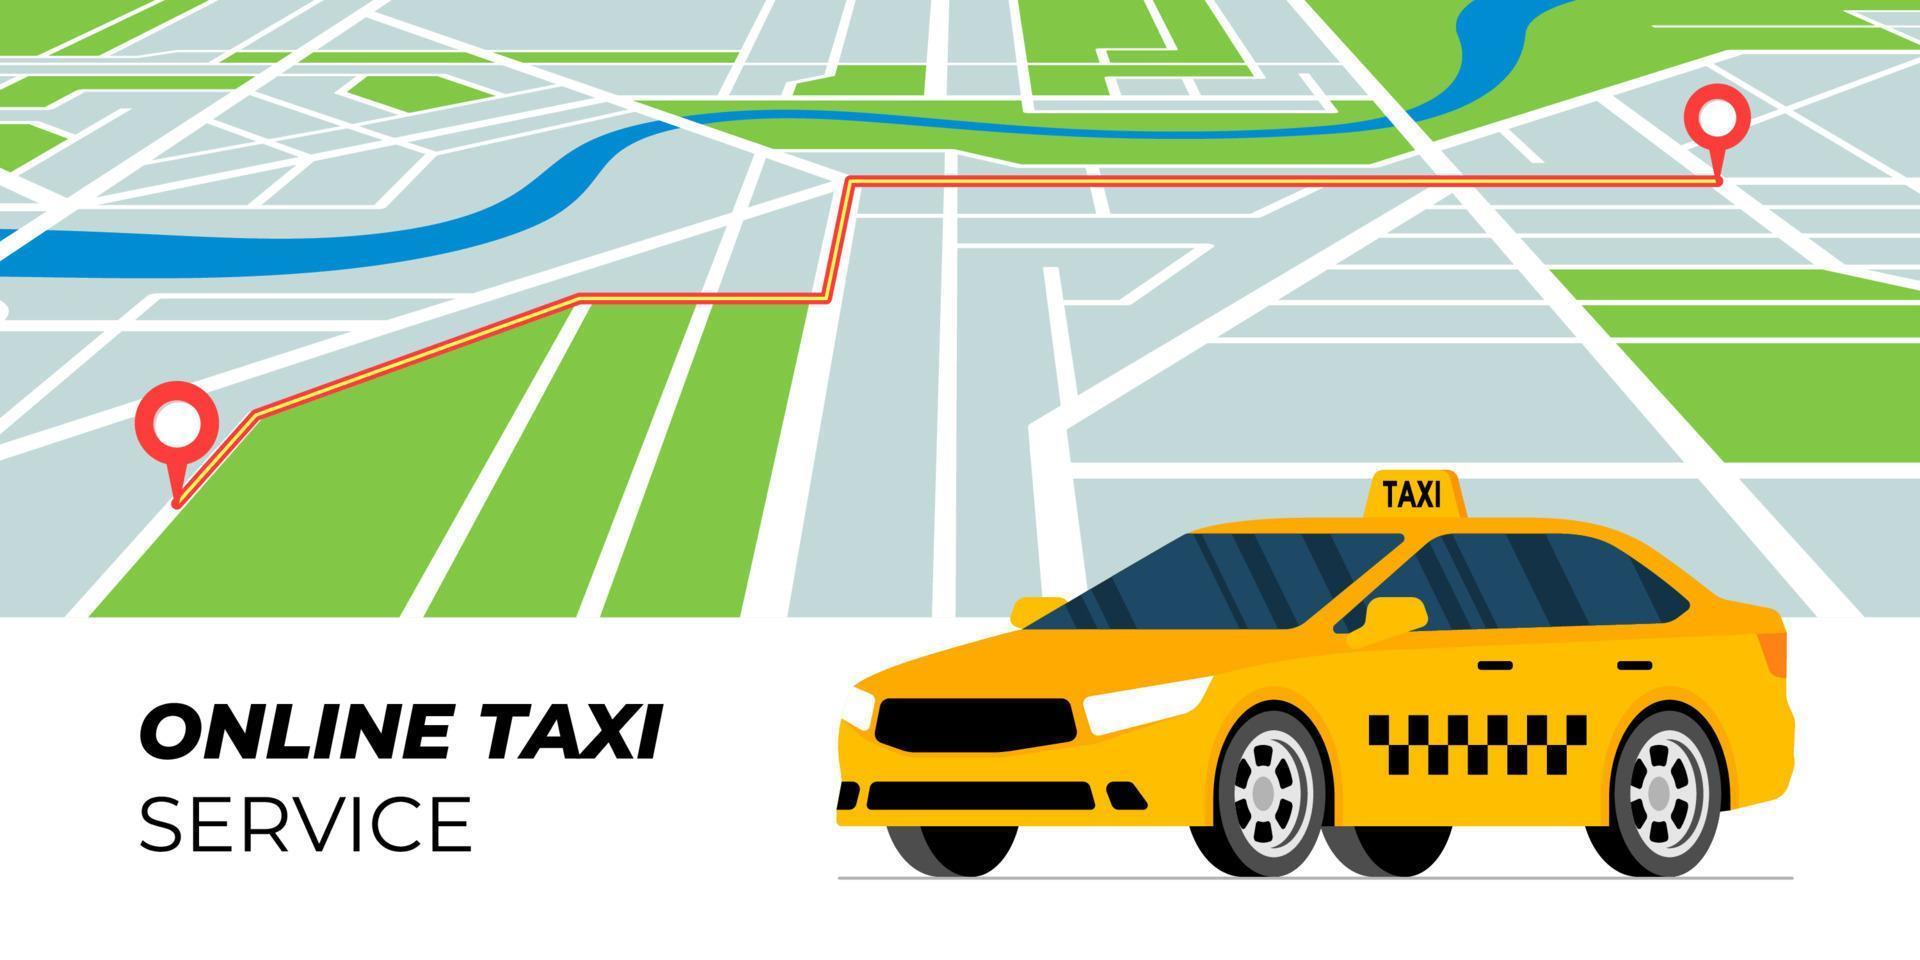 Taxi-Bestell- und Tracking-Service-Konzept. gelbes taxi steht auf stadtplanhintergrund mit autoroute. Taxi online bestellen. Holen Sie sich das Werbebanner-Konzept für Transport-Webanwendungen. Vektor-Illustration vektor